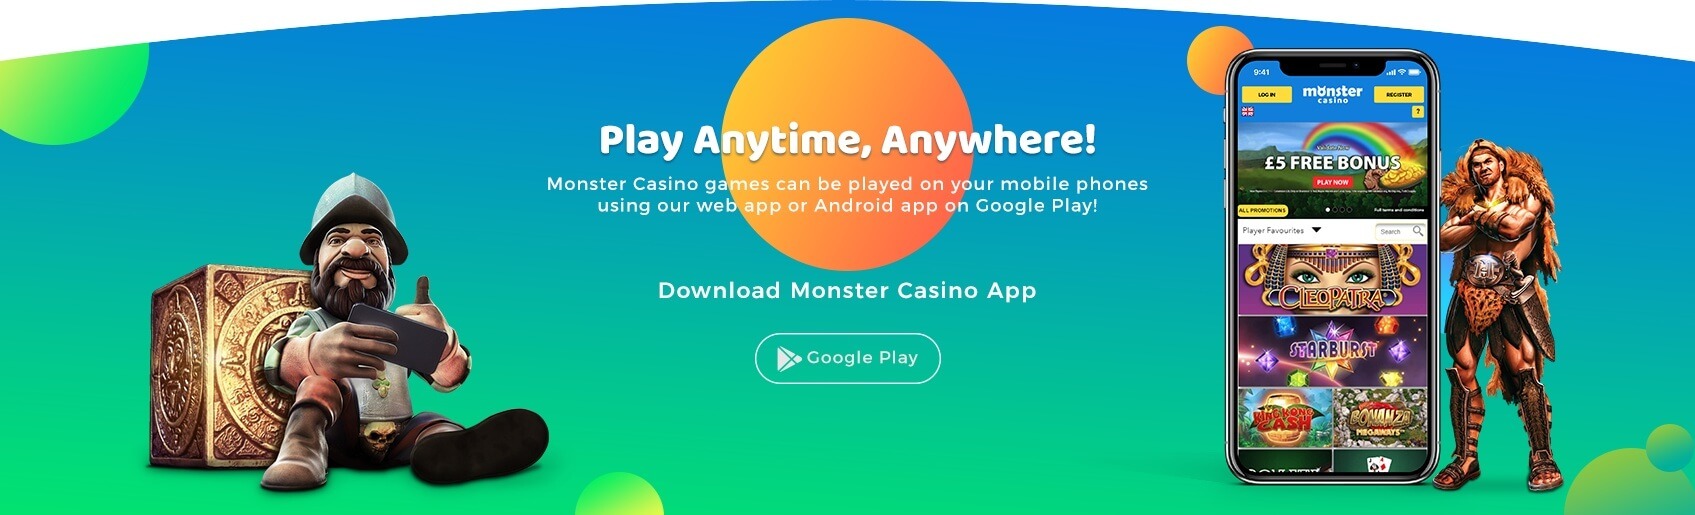 Monster Casino Mobile